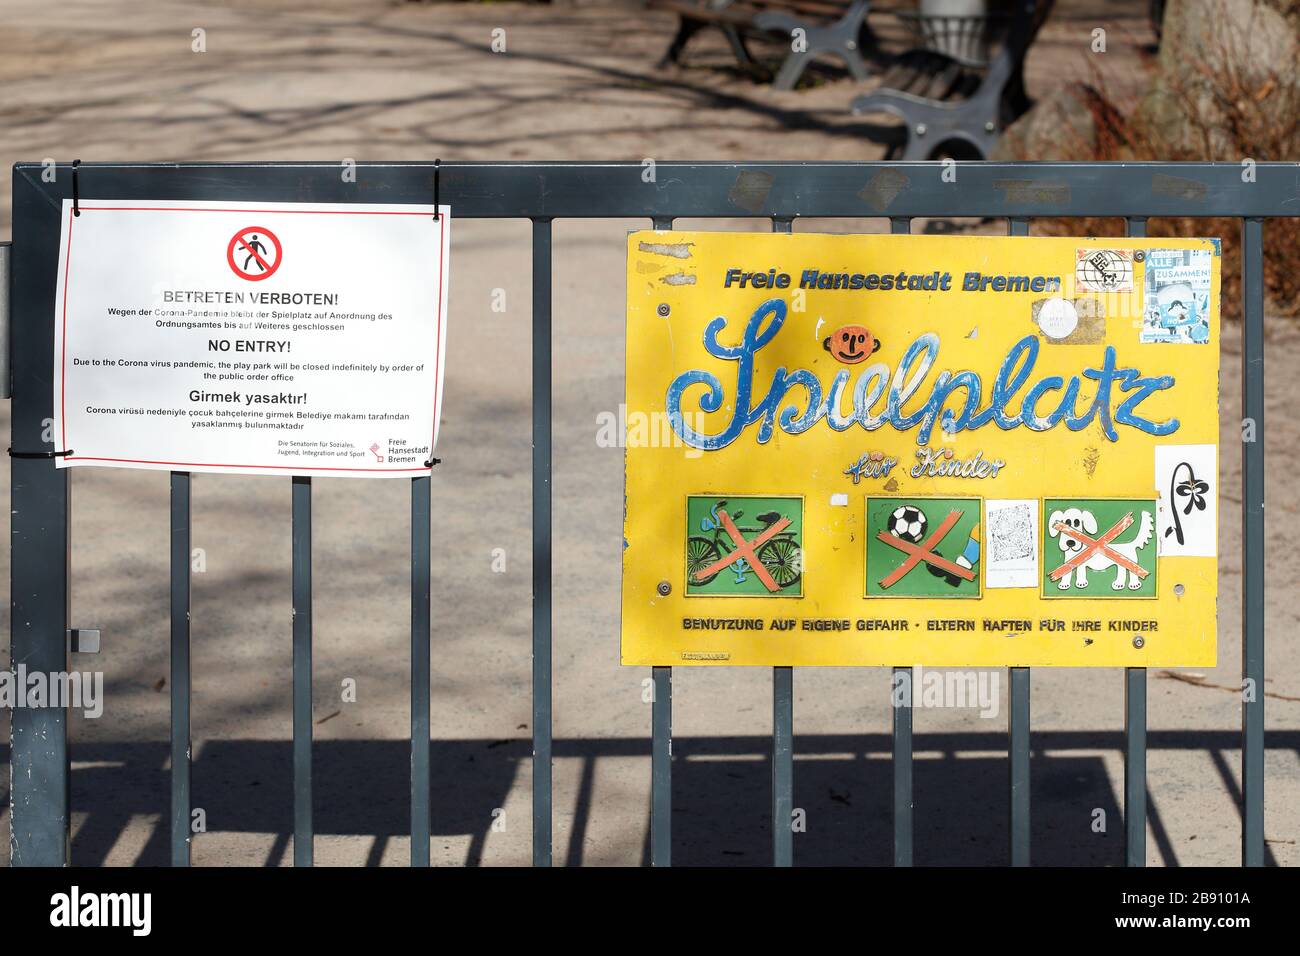 Bild Spielplatz wegen Coronavirus geschlossen, betten verboten Stockfoto